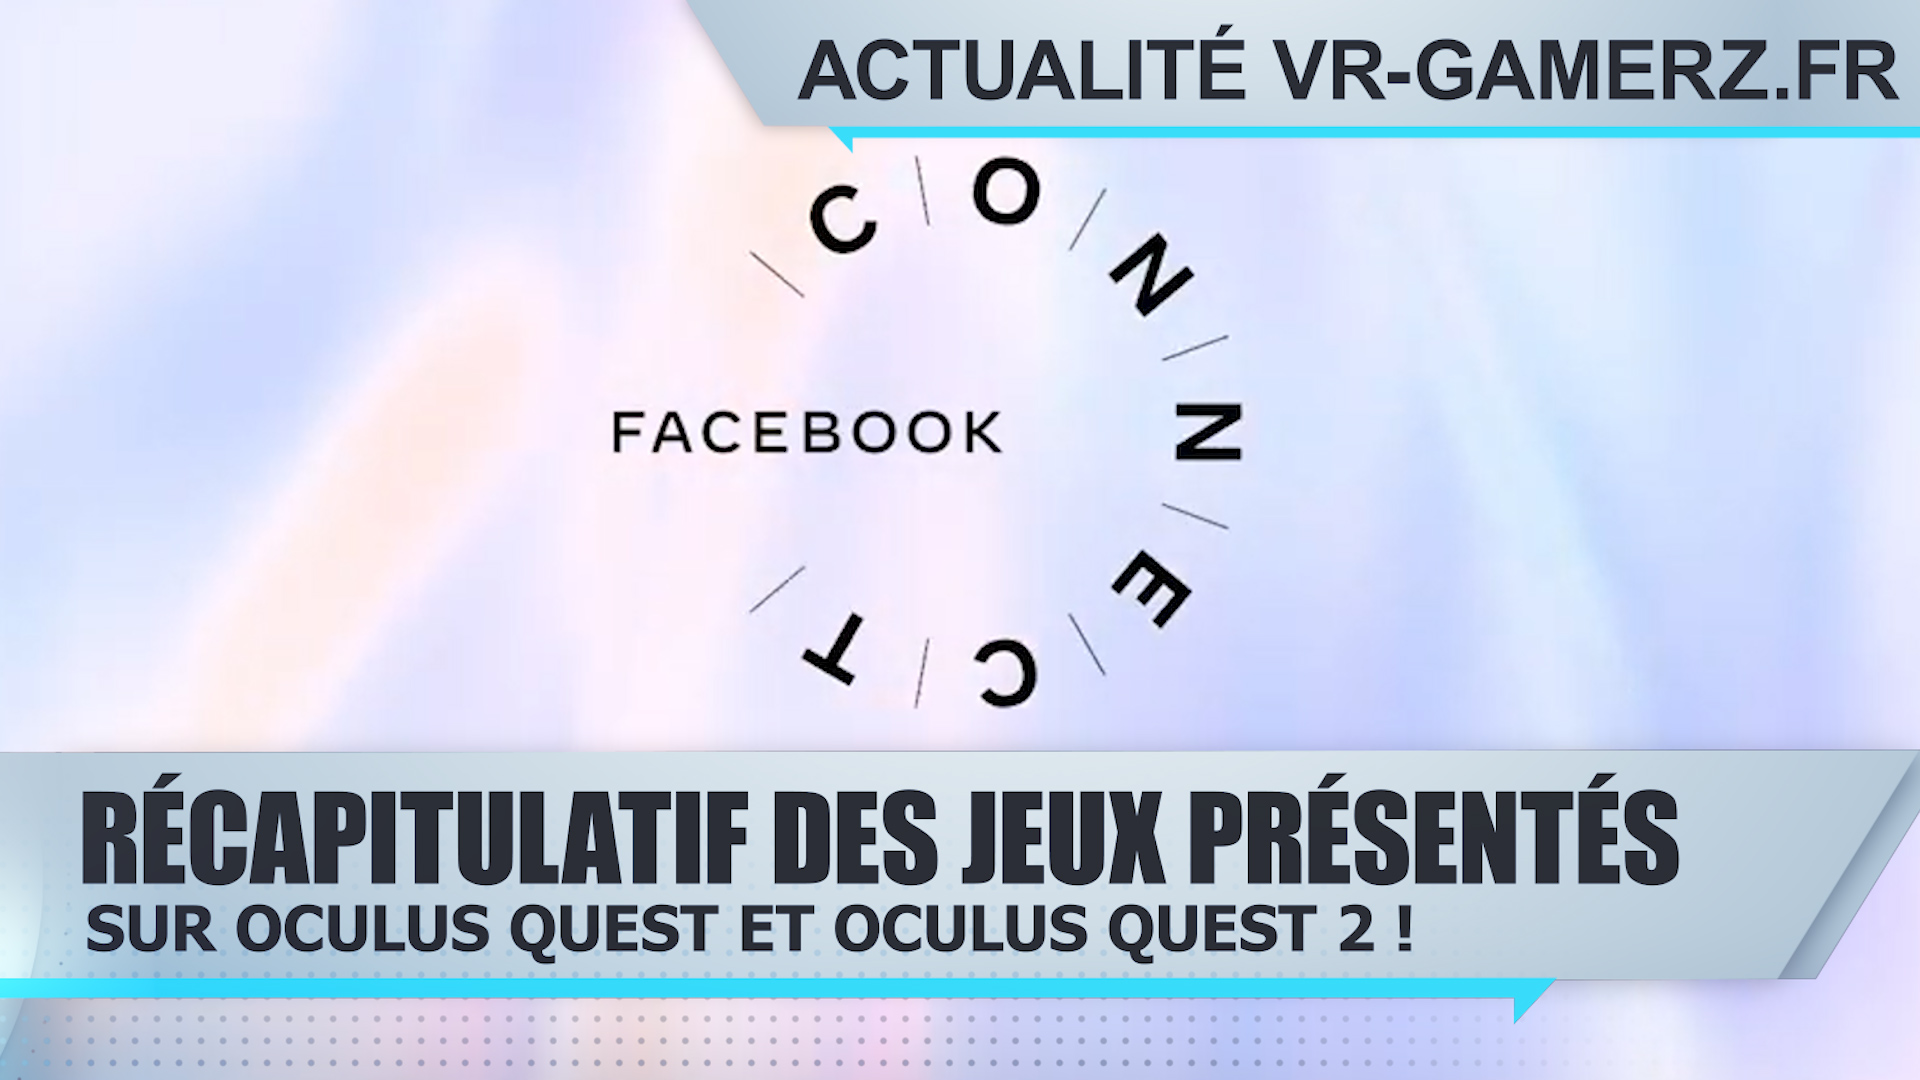 Récapitulatif des jeux présentés lors du Facebook connect sur Oculus quest 1 et 2 !